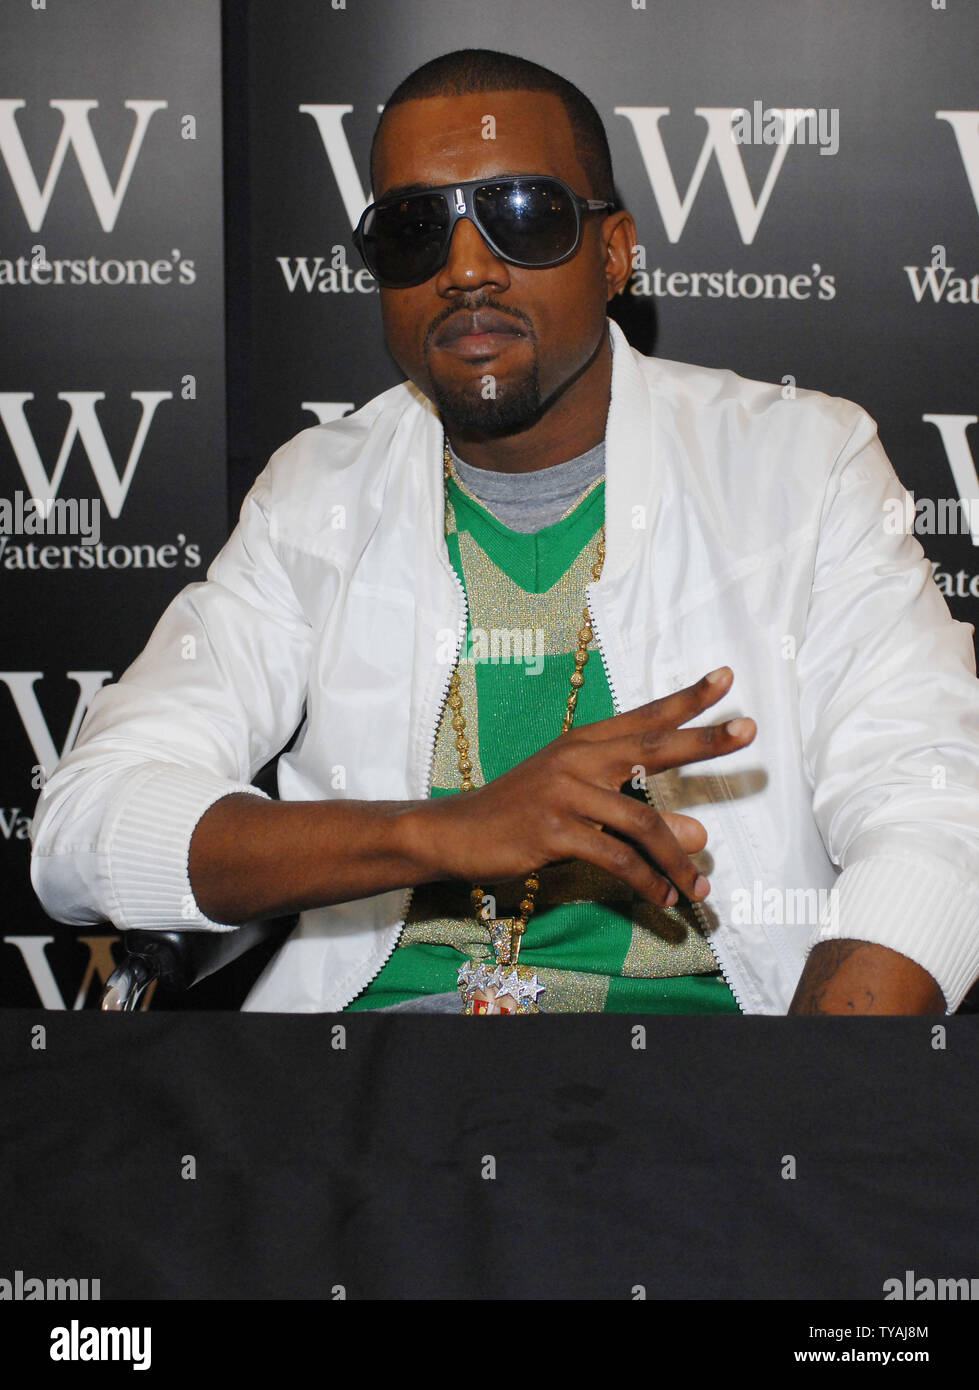 Amerikanische Hip-Hop-Star Kanye West besucht eine Unterzeichnung der Donda West Kanye Memoir 'Anheben' Unter Waterstones.com/ebooks, Piccadilly in London am 30. Juni 2007. (UPI Foto/Rune Hellestad) Stockfoto